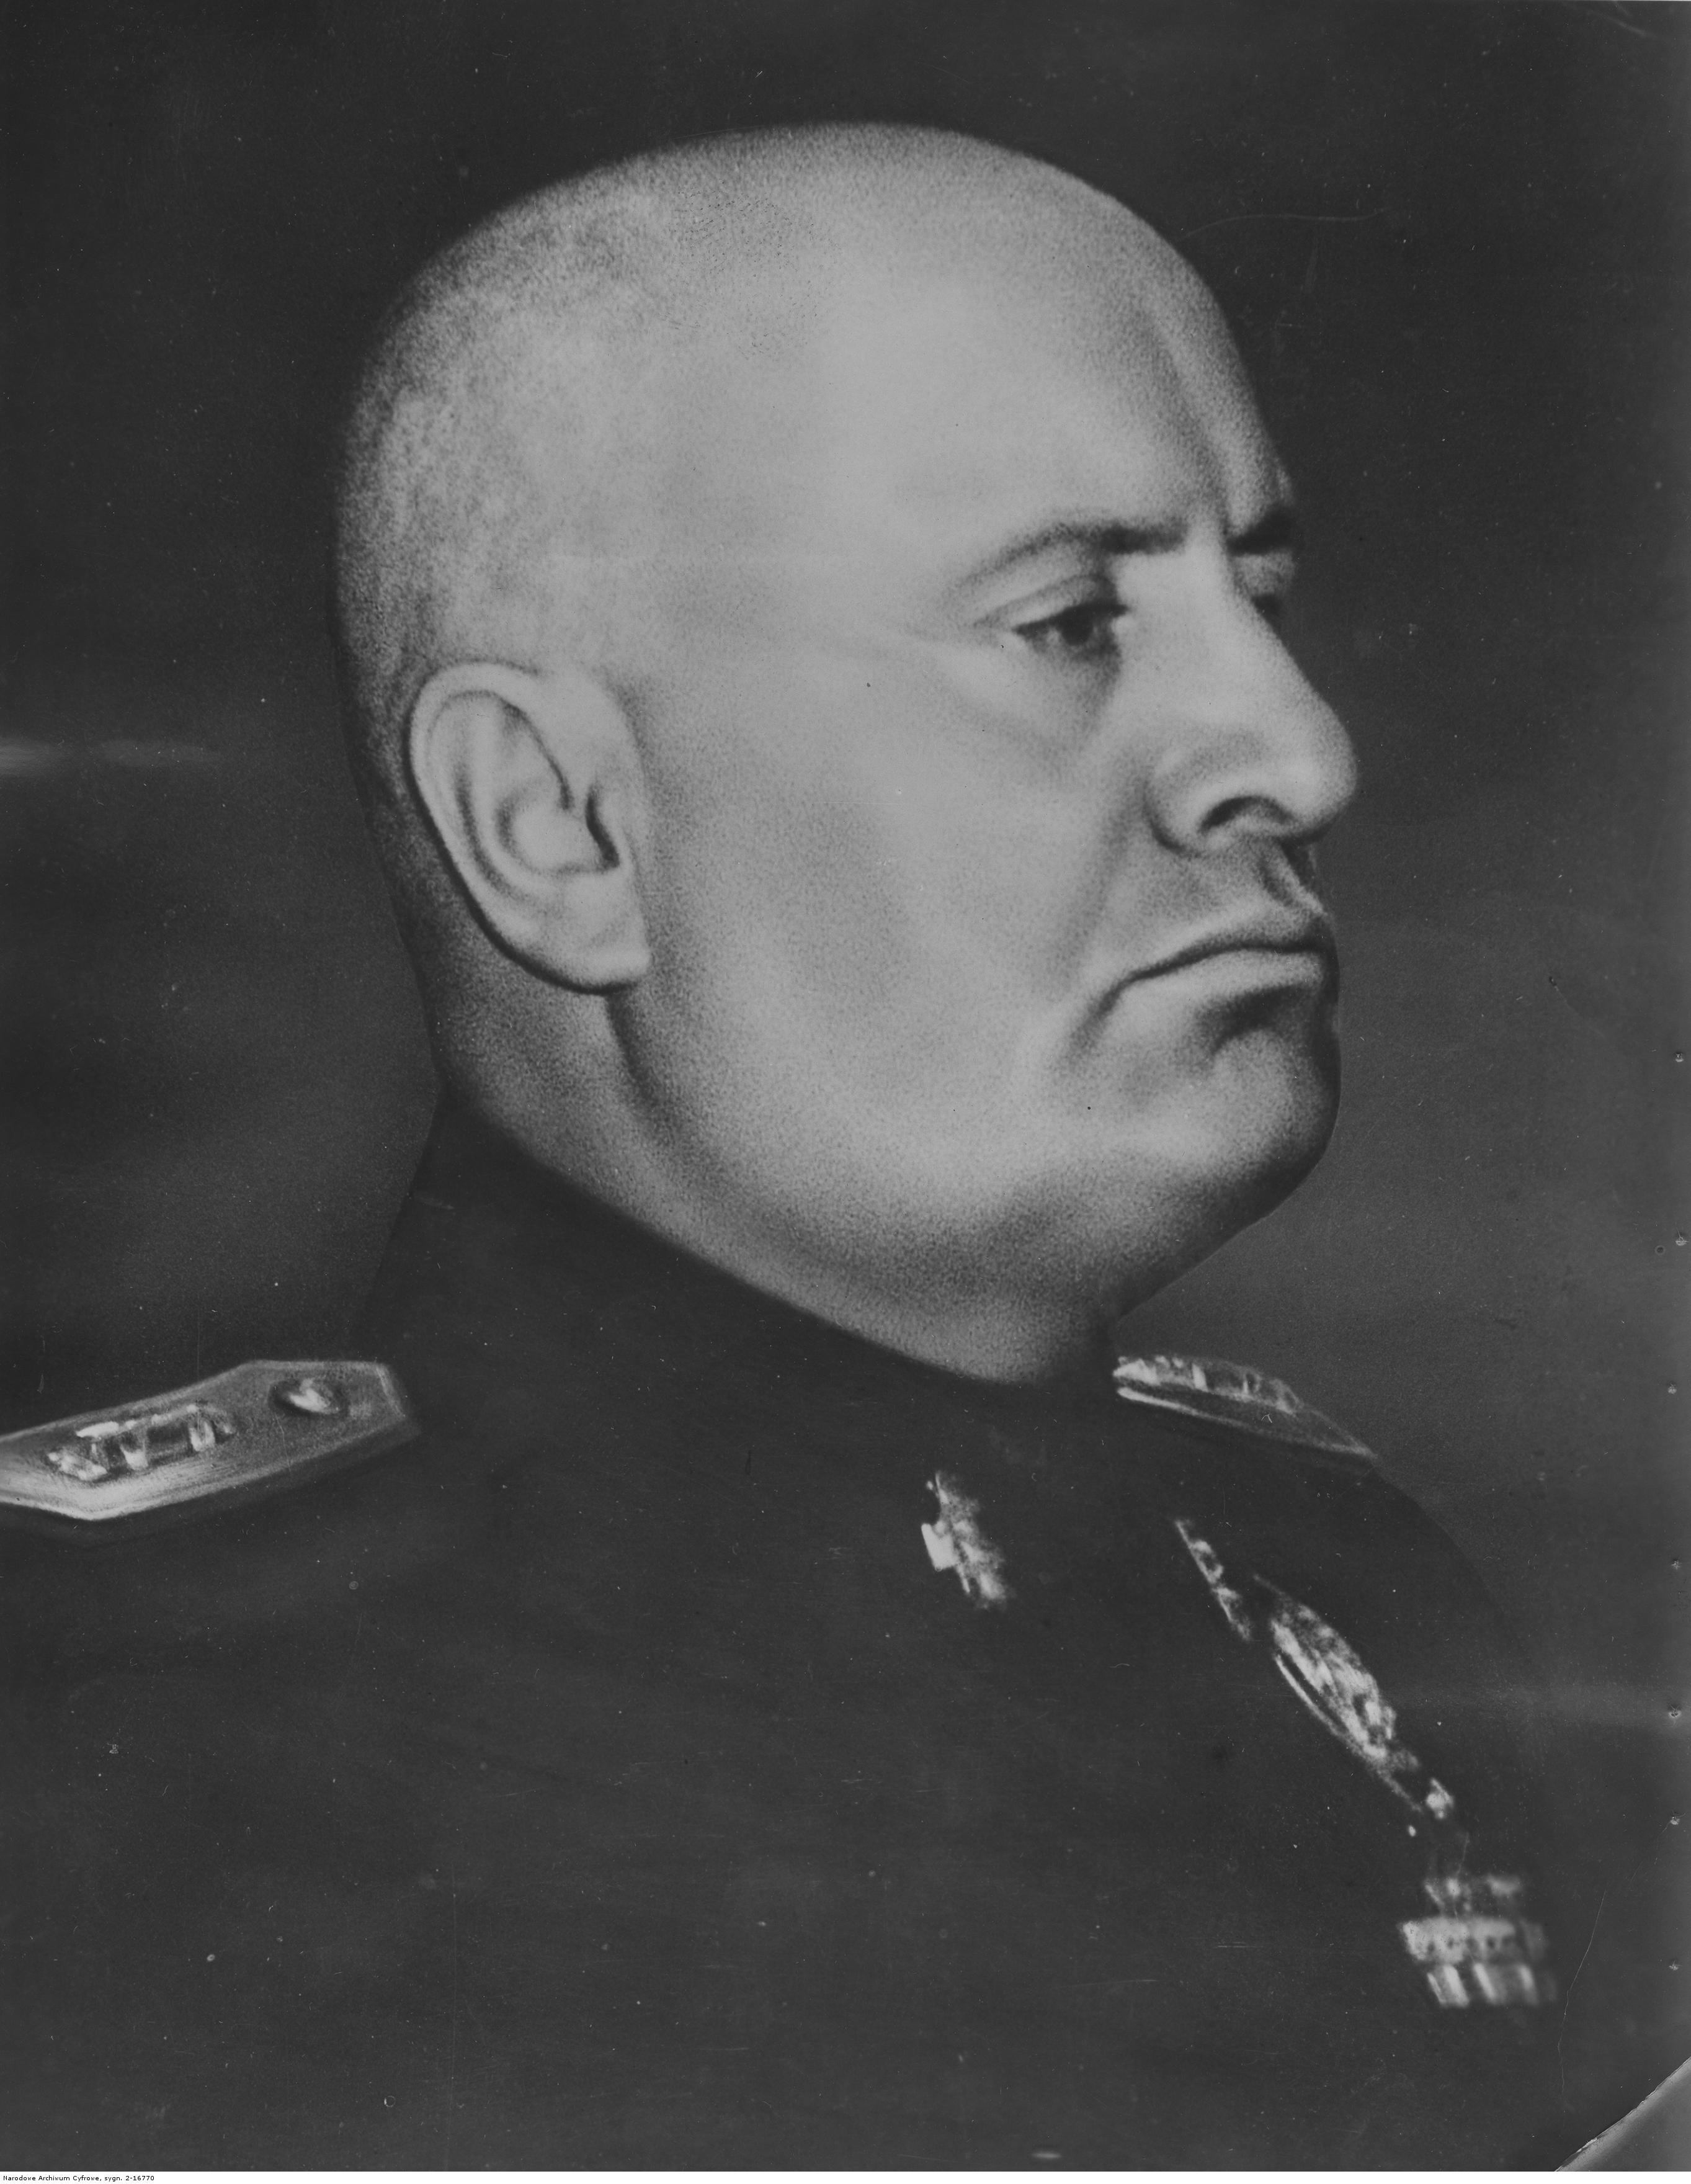 File:Benito Mussolini portrait as dictator (retouched).jpg - Wikimedia ...